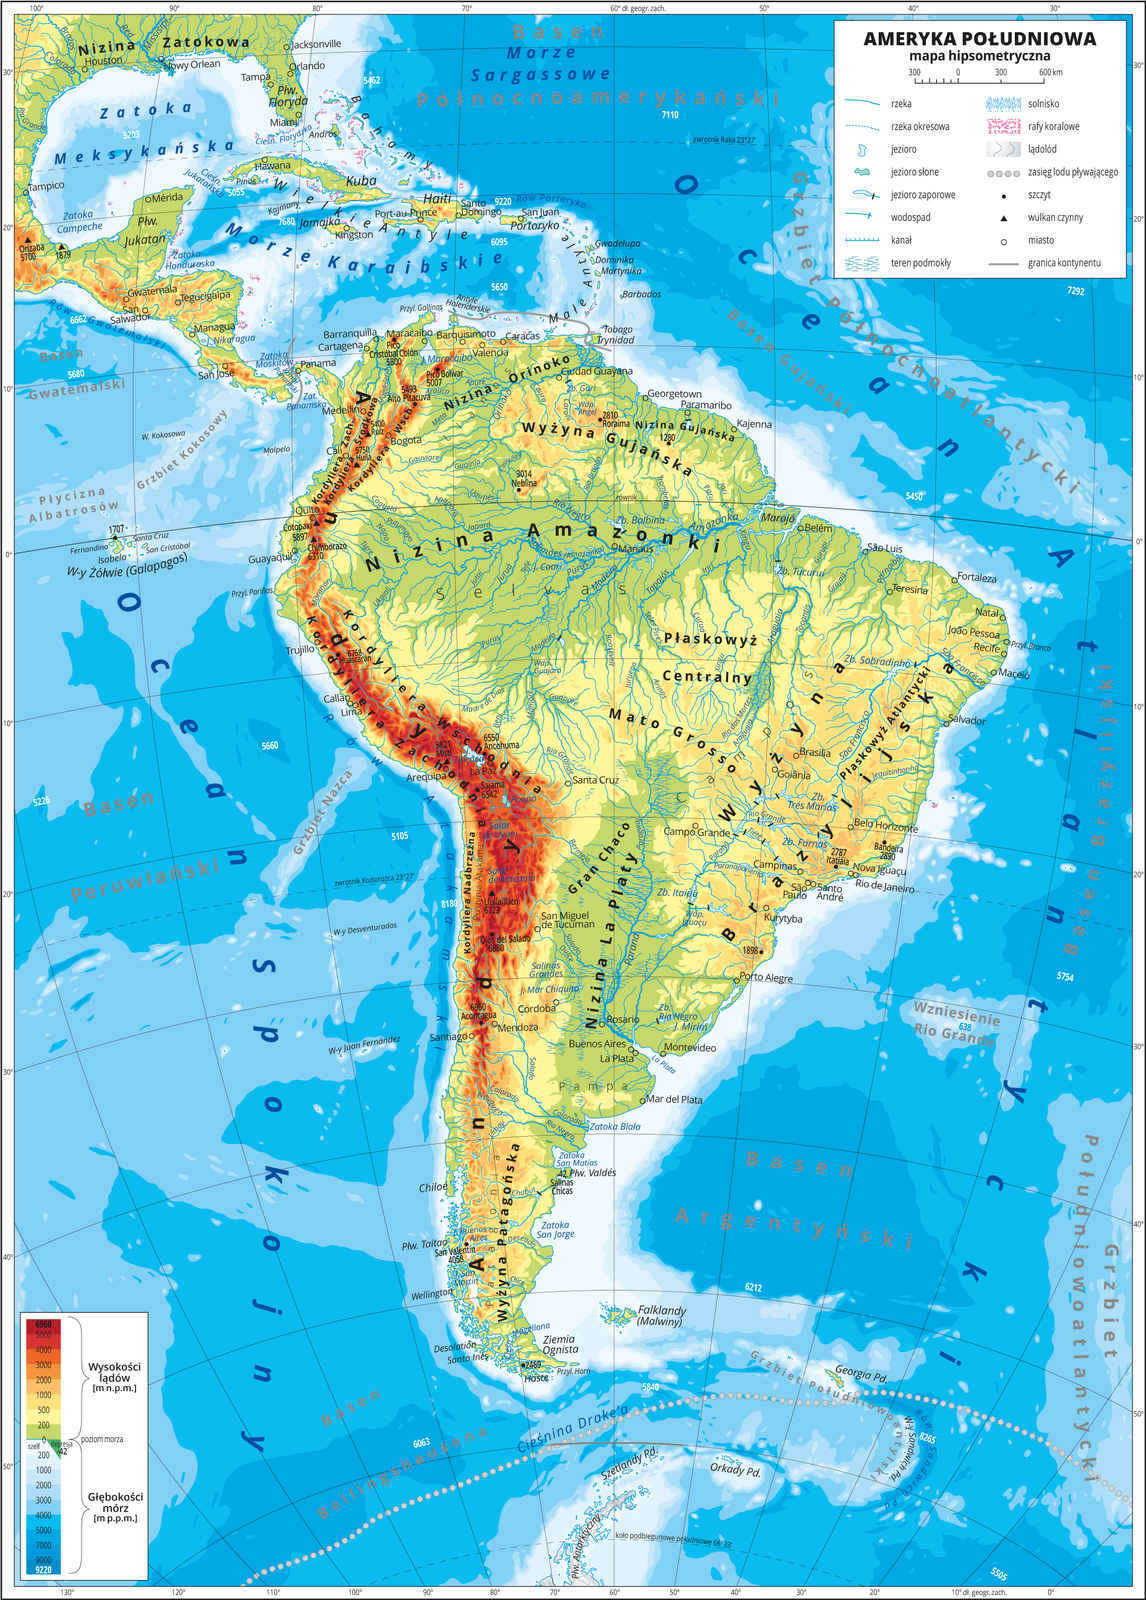 Ilustracja przedstawia mapę hipsometryczną Ameryki Południowej. W obrębie lądów występują obszary w kolorze zielonym, żółtym, pomarańczowym i czerwonym. Na zachodnim wybrzeżu dominują pasma górskie o przebiegu południkowym. Rozległe niziny wzdłuż największych rzek. Morza zaznaczono kolorem niebieskim. Na mapie opisano nazwy półwyspów, wysp, nizin, wyżyn i pasm górskich, mórz, zatok, rzek i jezior. Oznaczono i opisano główne miasta. Oznaczono czarnymi kropkami i opisano szczyty górskie. Trójkątami oznaczono czynne wulkany i podano ich nazwy i wysokości. Mapa pokryta jest równoleżnikami i południkami. Dookoła mapy w białej ramce opisano współrzędne geograficzne co dziesięć stopni. W legendzie umieszczono i opisano znaki użyte na mapie.